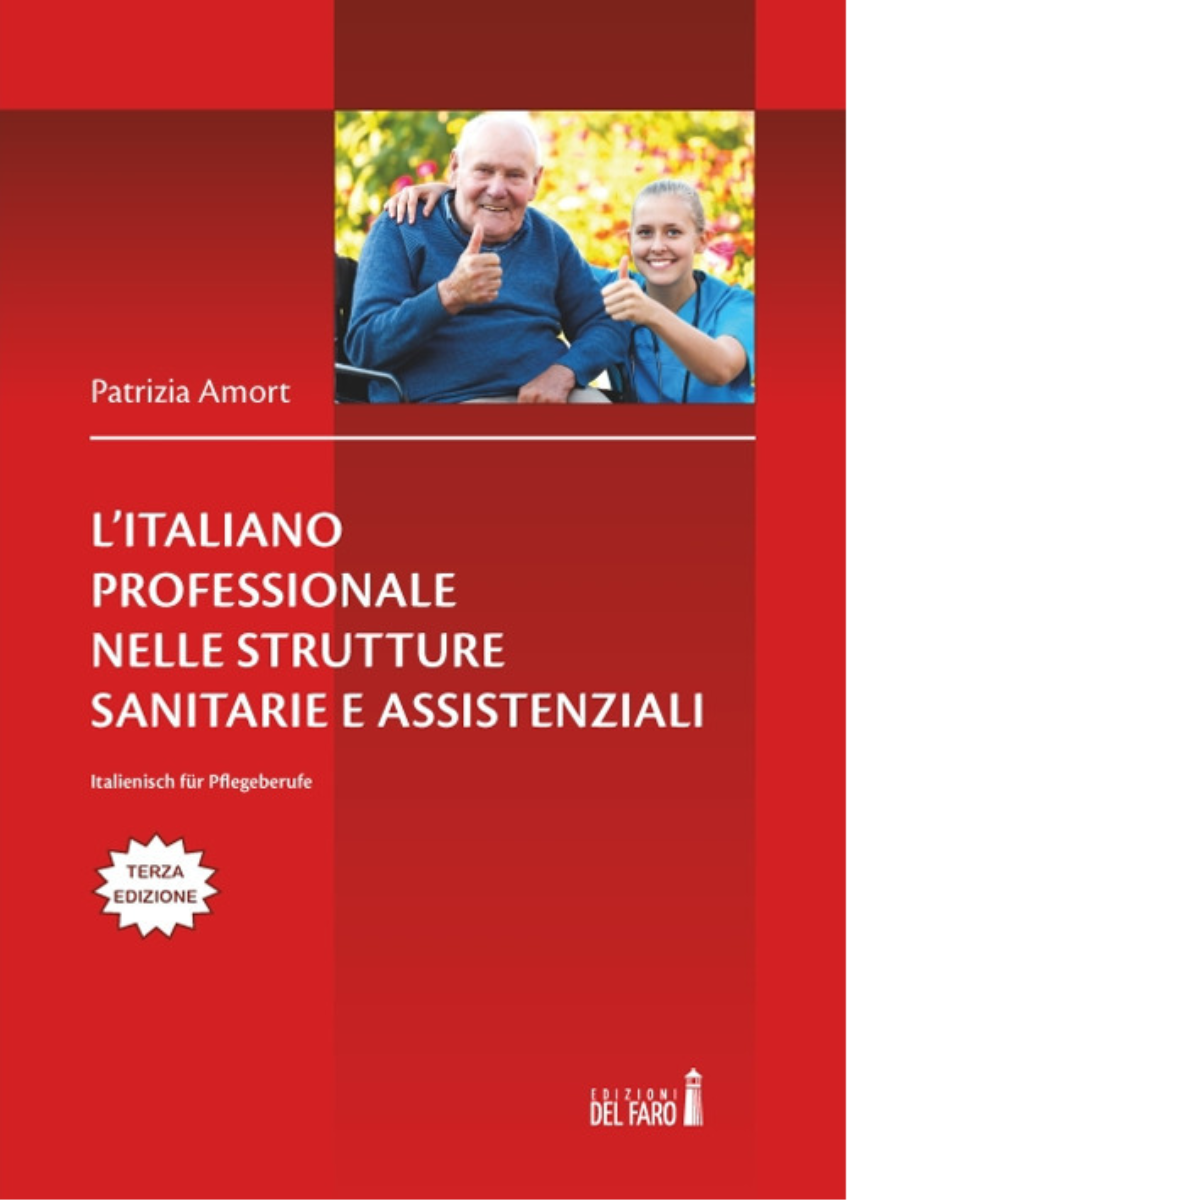 L'italiano professionale nelle strutture sanitarie assistenziali - Del Faro,2019 libro usato